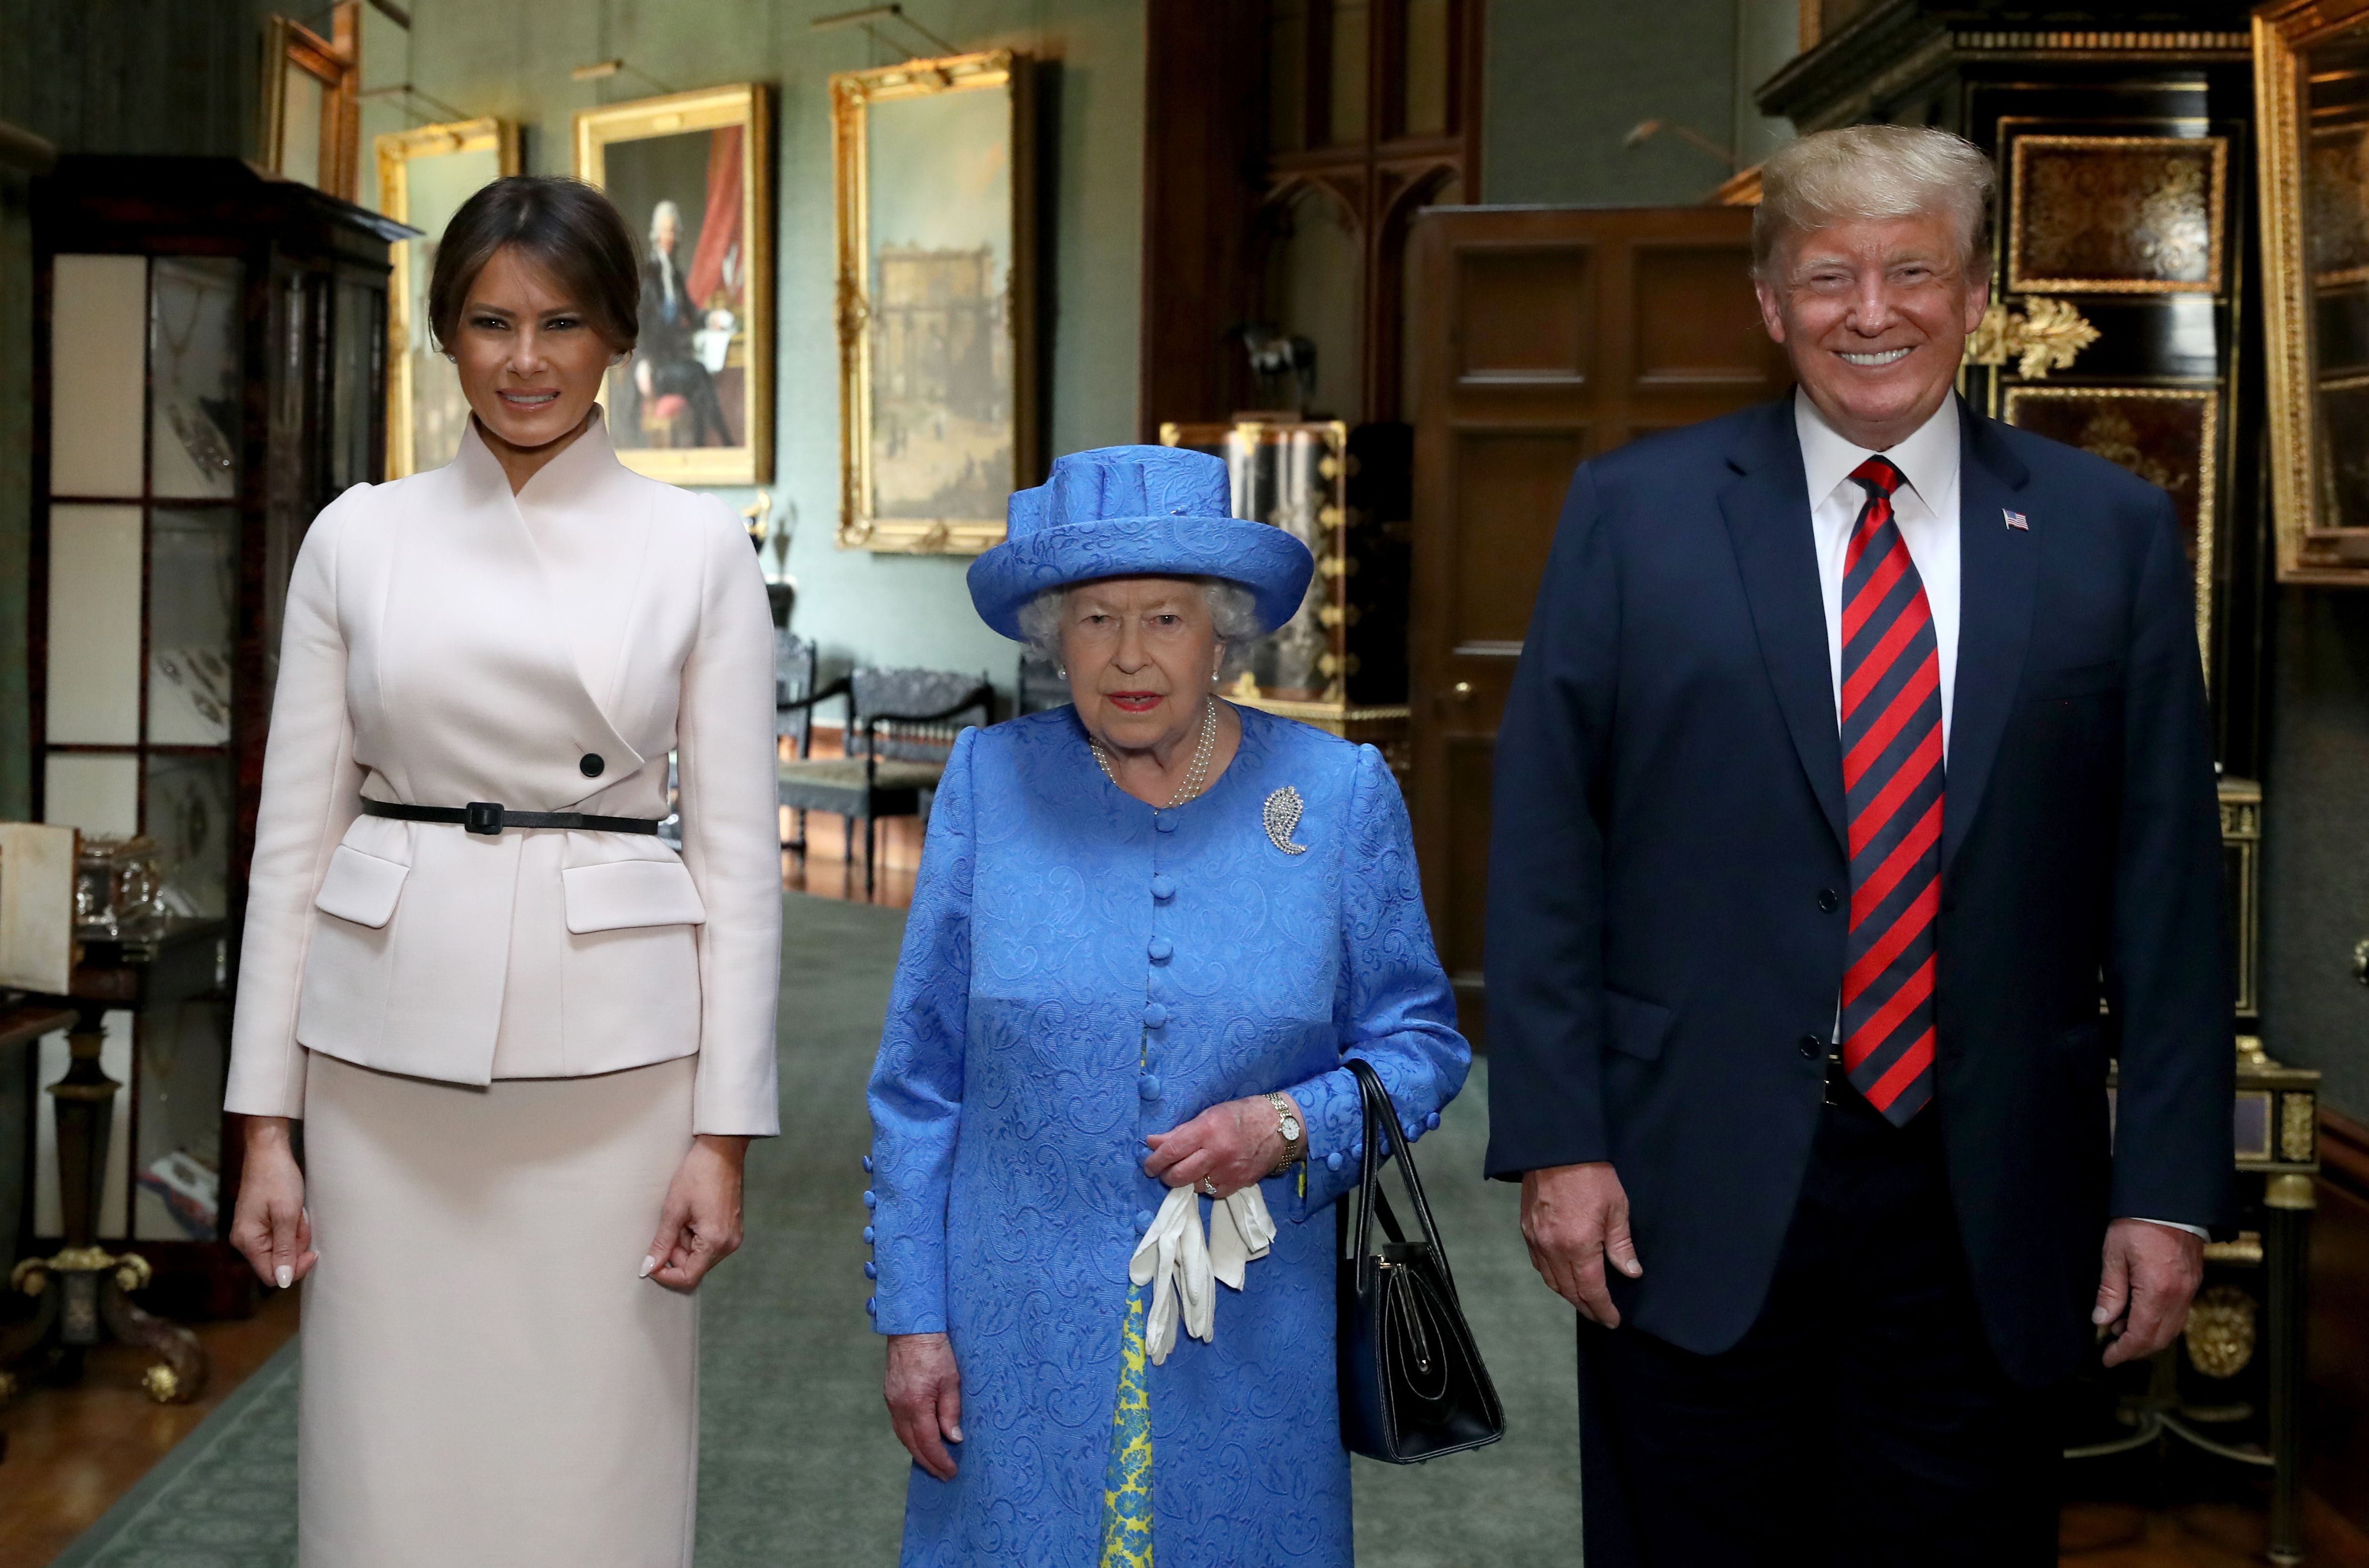 El protocolo que deberá seguir Trump durante su encuentro con la reina Isabel II